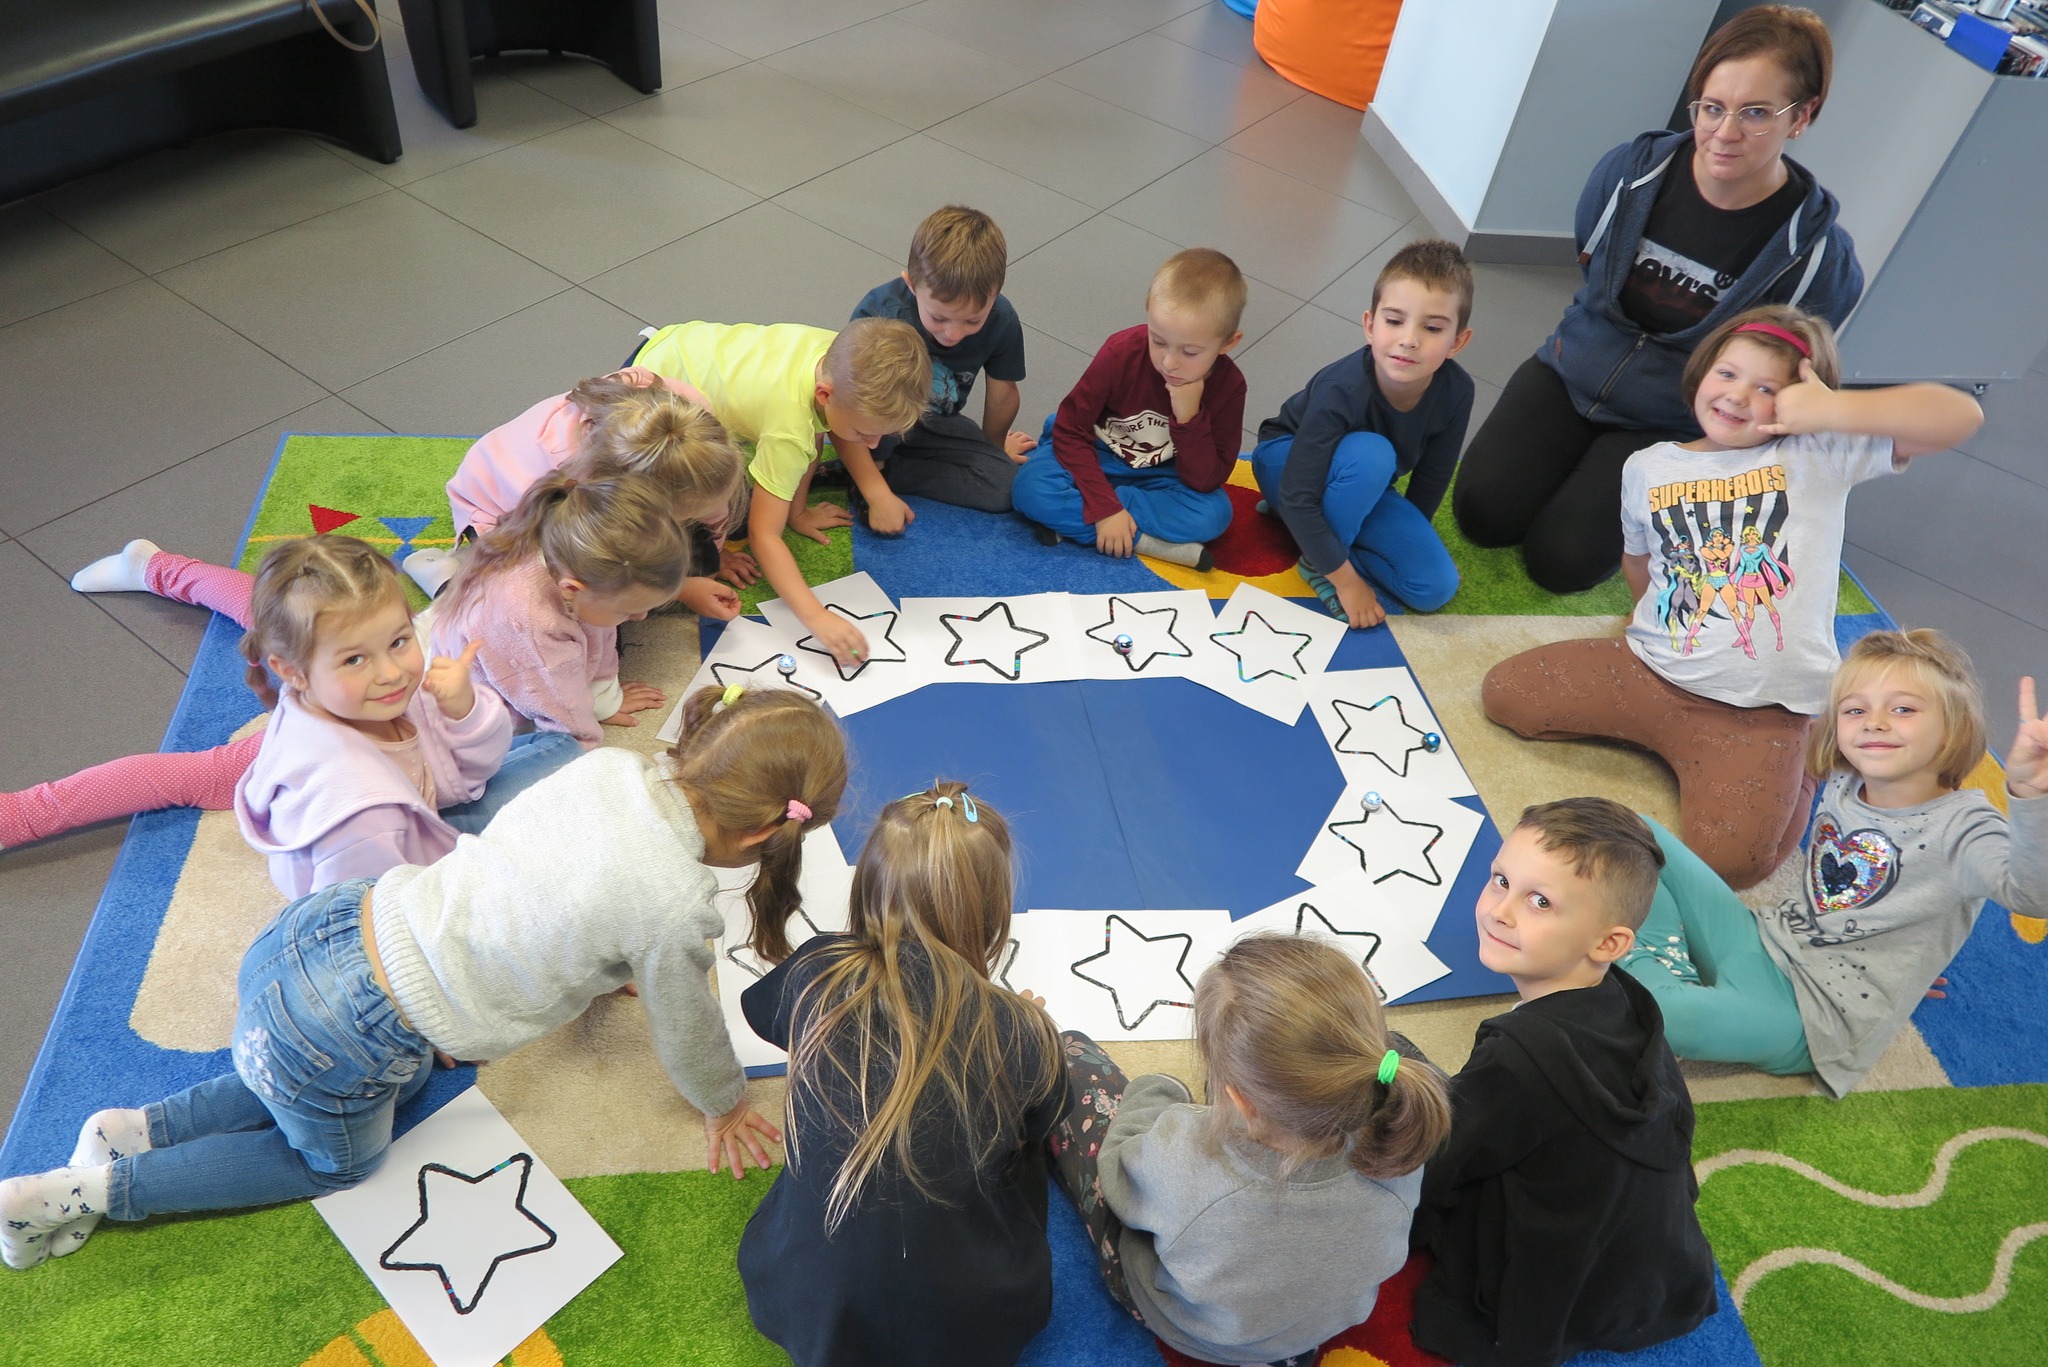 dzieci puszczają ozoboty po gwiazdach narysowanych na kartkach w kształcicie flagi eu